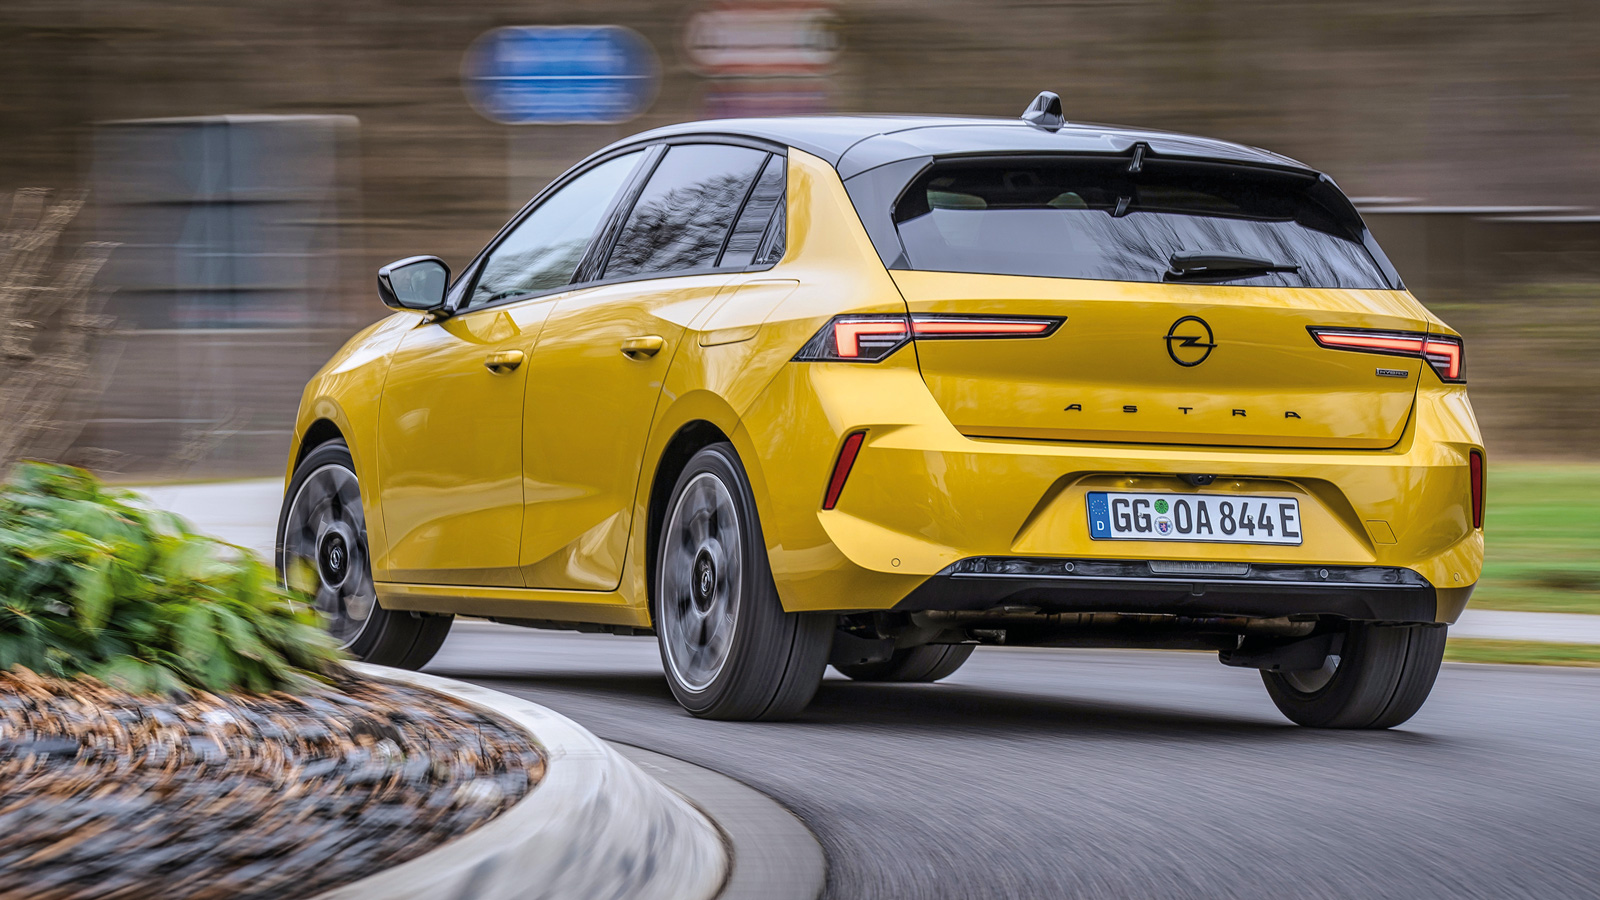 ΑΠΟΚΛΕΙΣΤΙΚΟ: Οδηγούμε το Νέο Opel Astra!